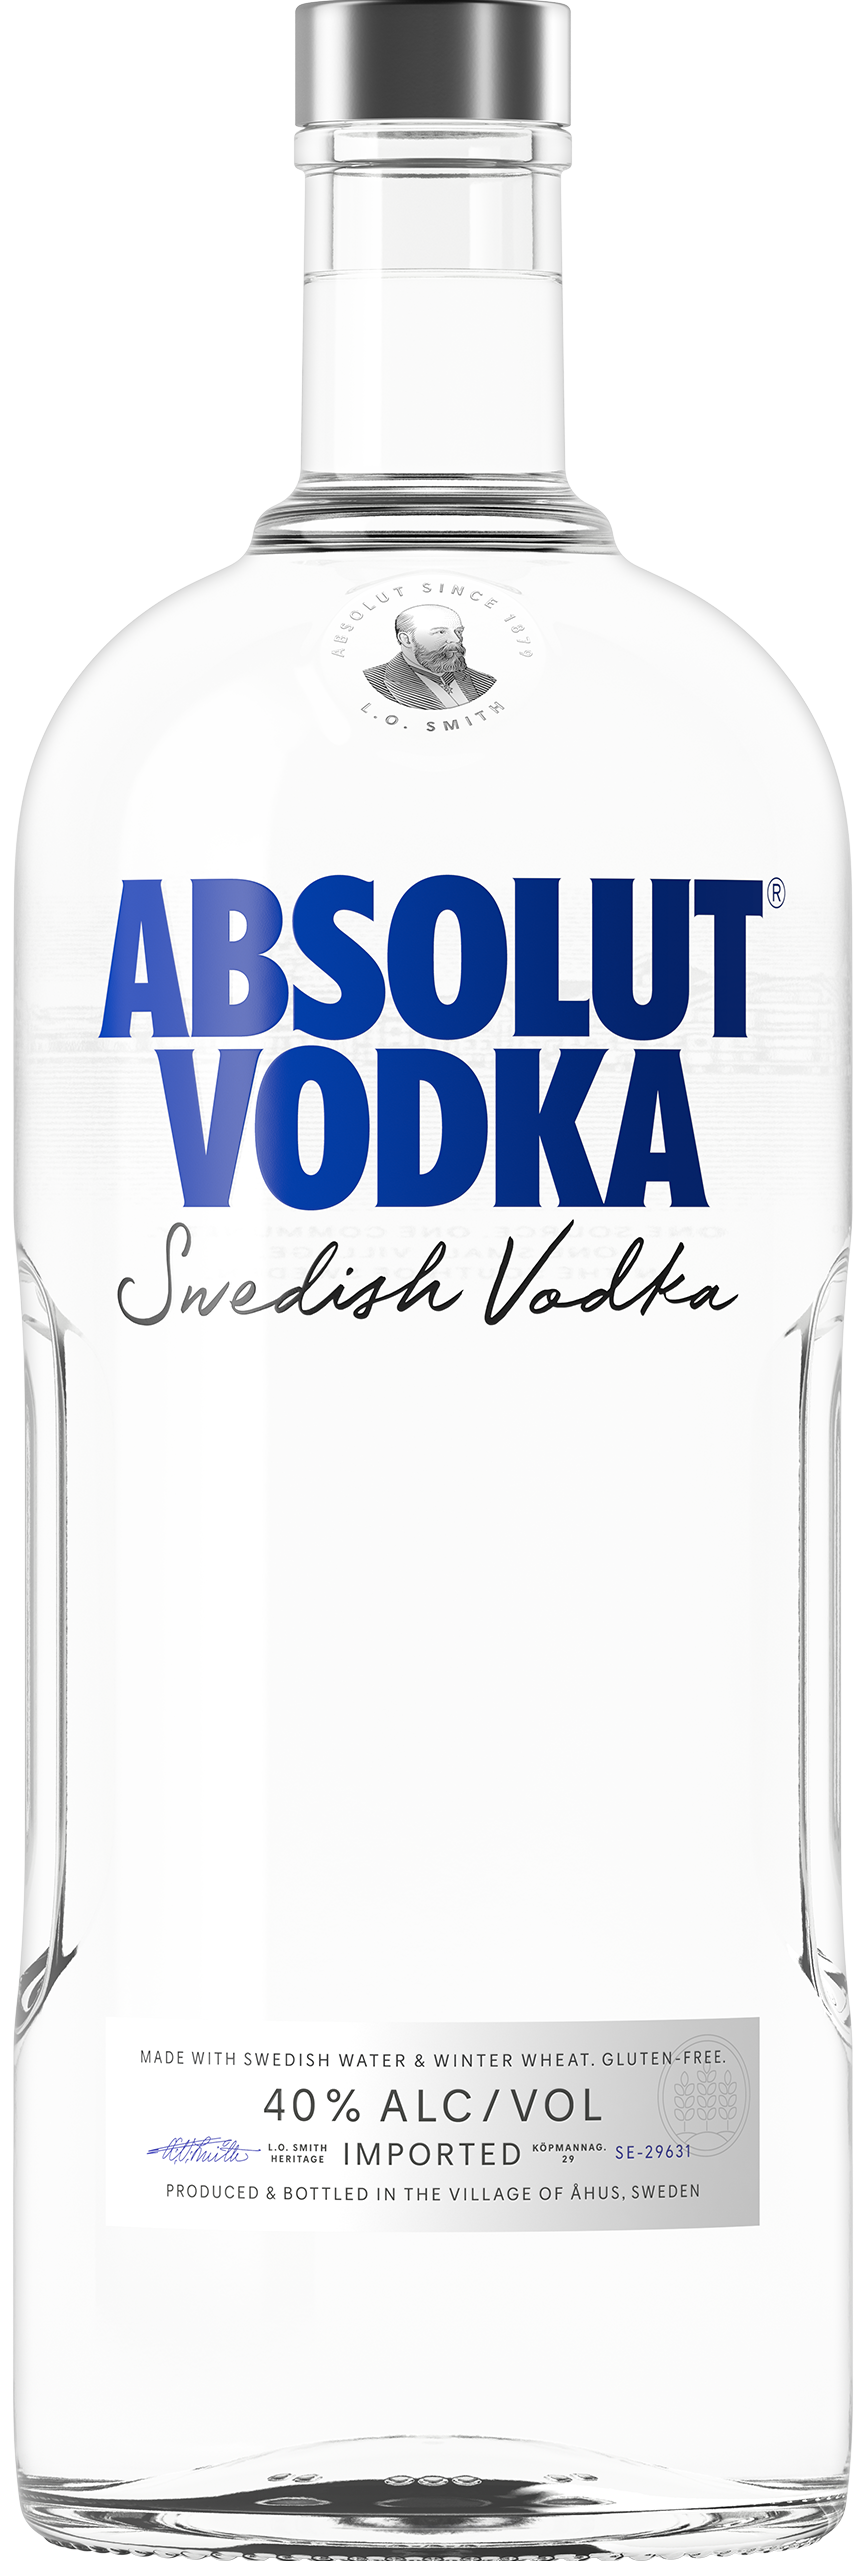 2021 High Quality 1 Liter Glass Liquor Bottles for Vodka Beverage